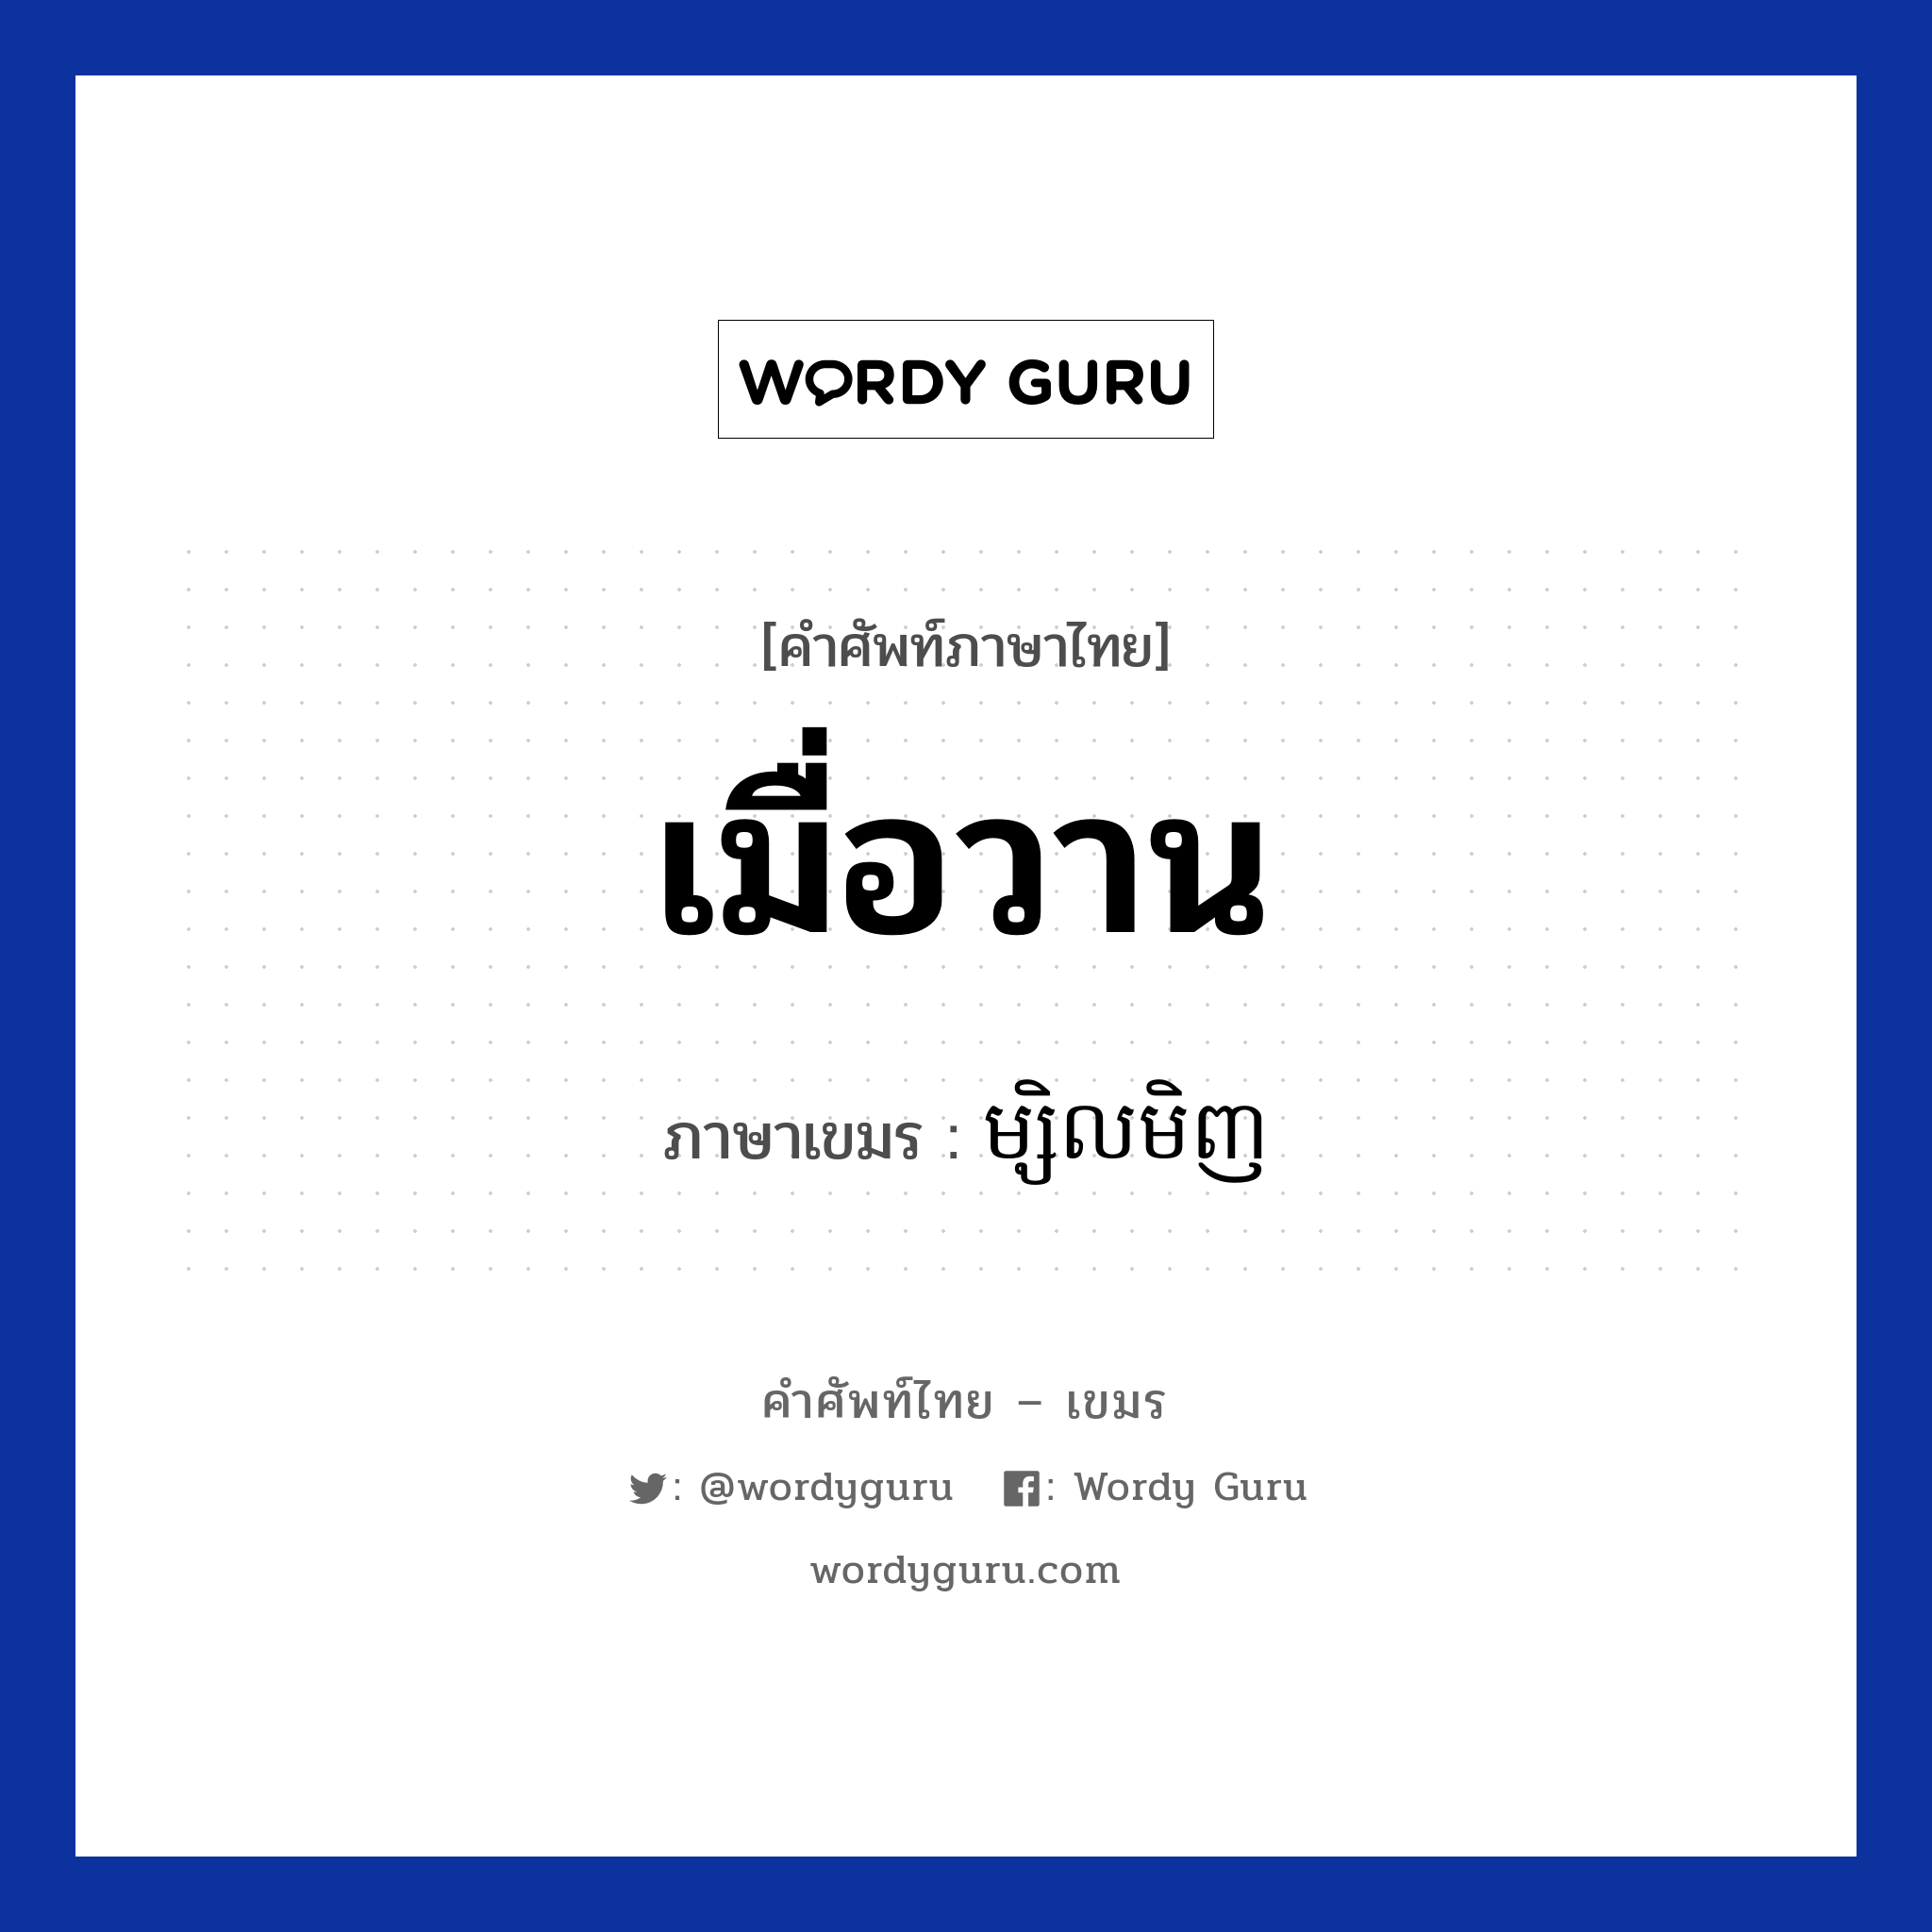 ម្សិលមិញ ภาษาไทย?, คำศัพท์ภาษาไทย - เขมร ម្សិលមិញ ภาษาเขมร เมื่อวาน หมวด วัน Mselmenh หมวด วัน